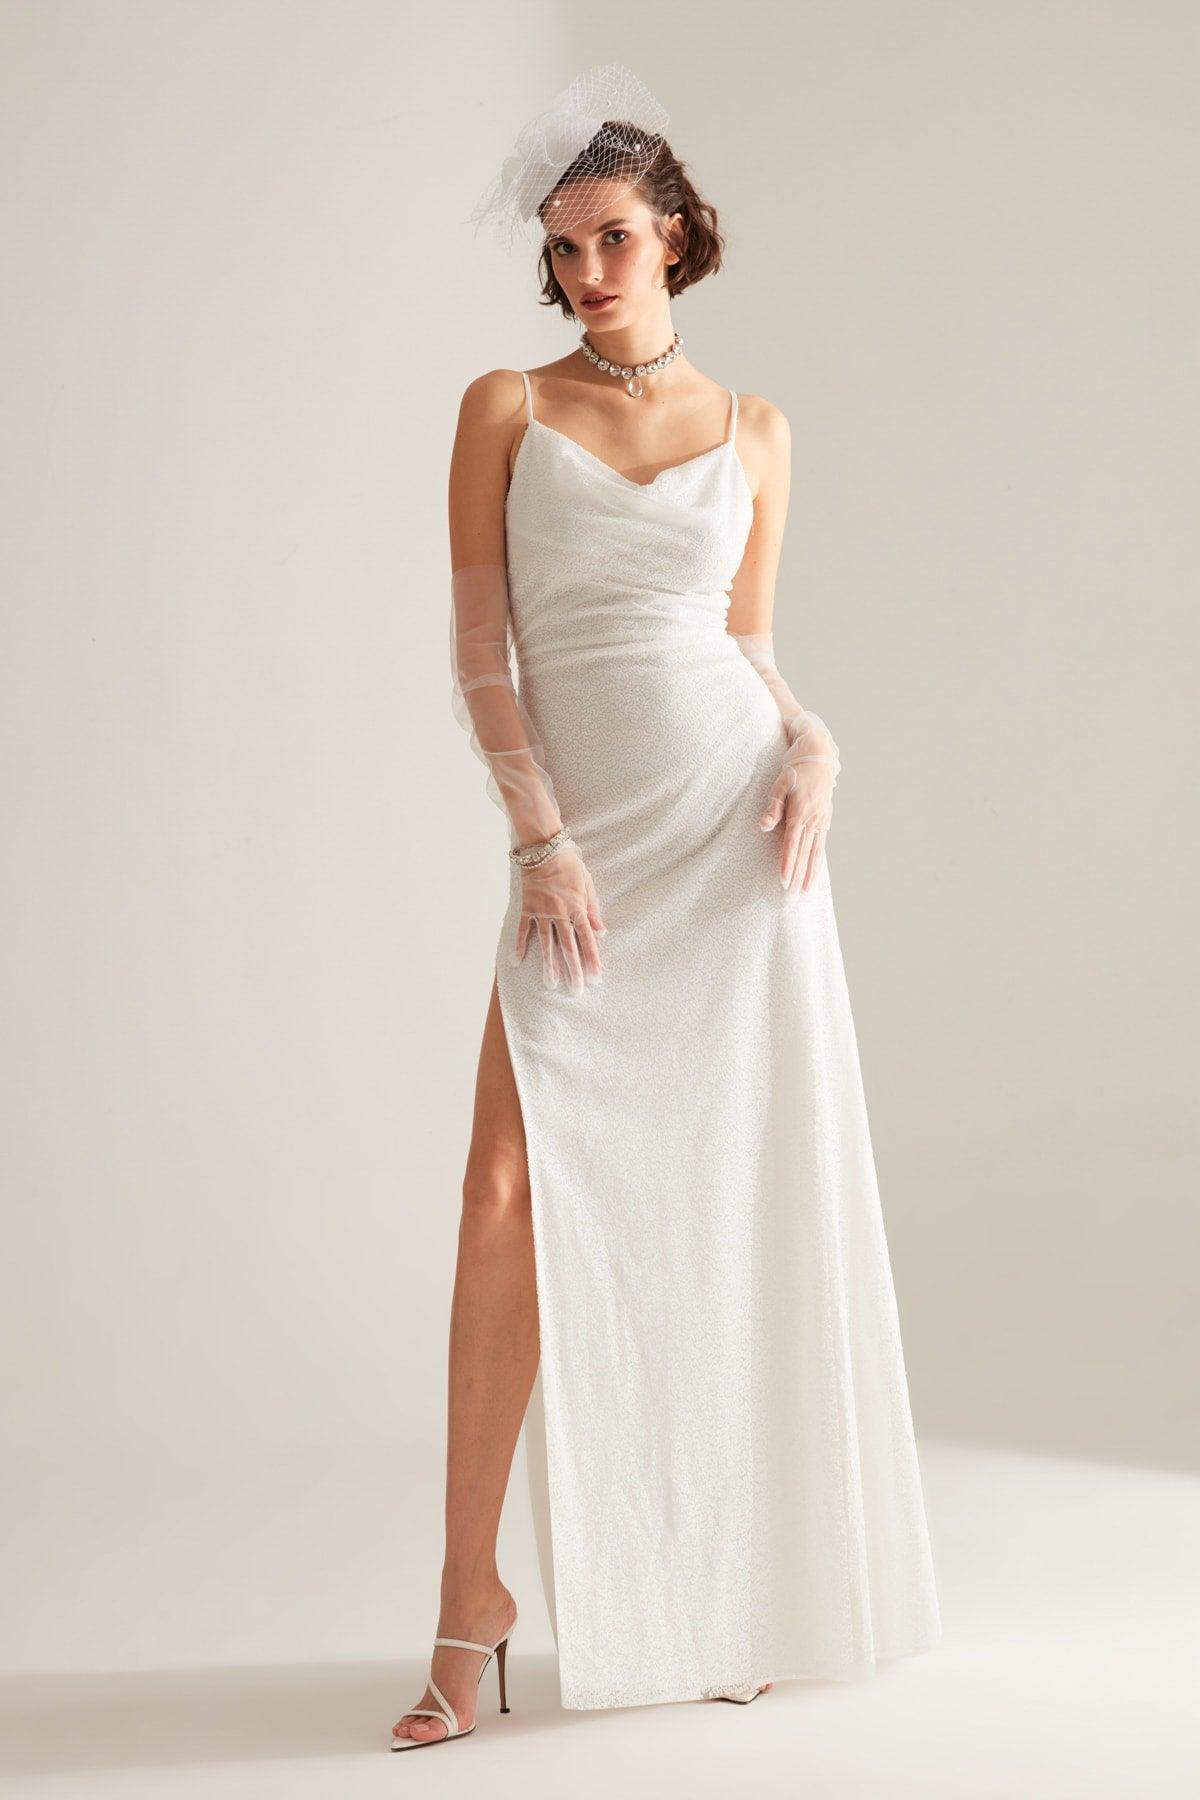 Strap Degajee Collar Slit Sequin White Evening Dress - Swordslife